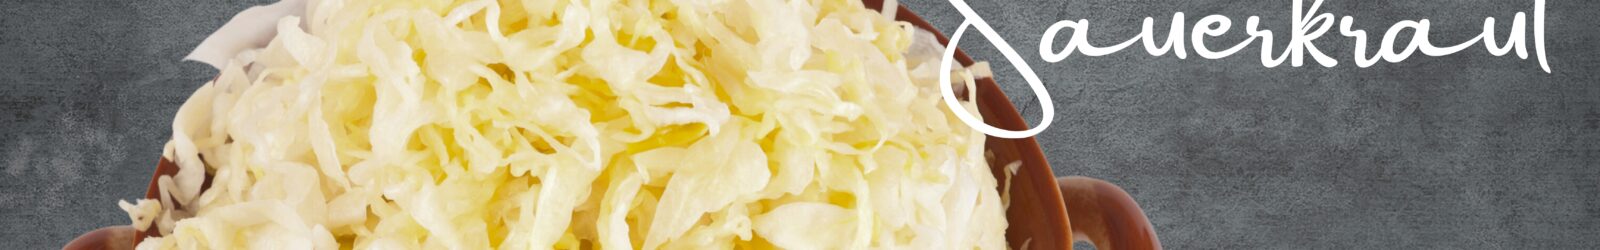 International Business Seminars - Recipe: How to Make Sauerkraut